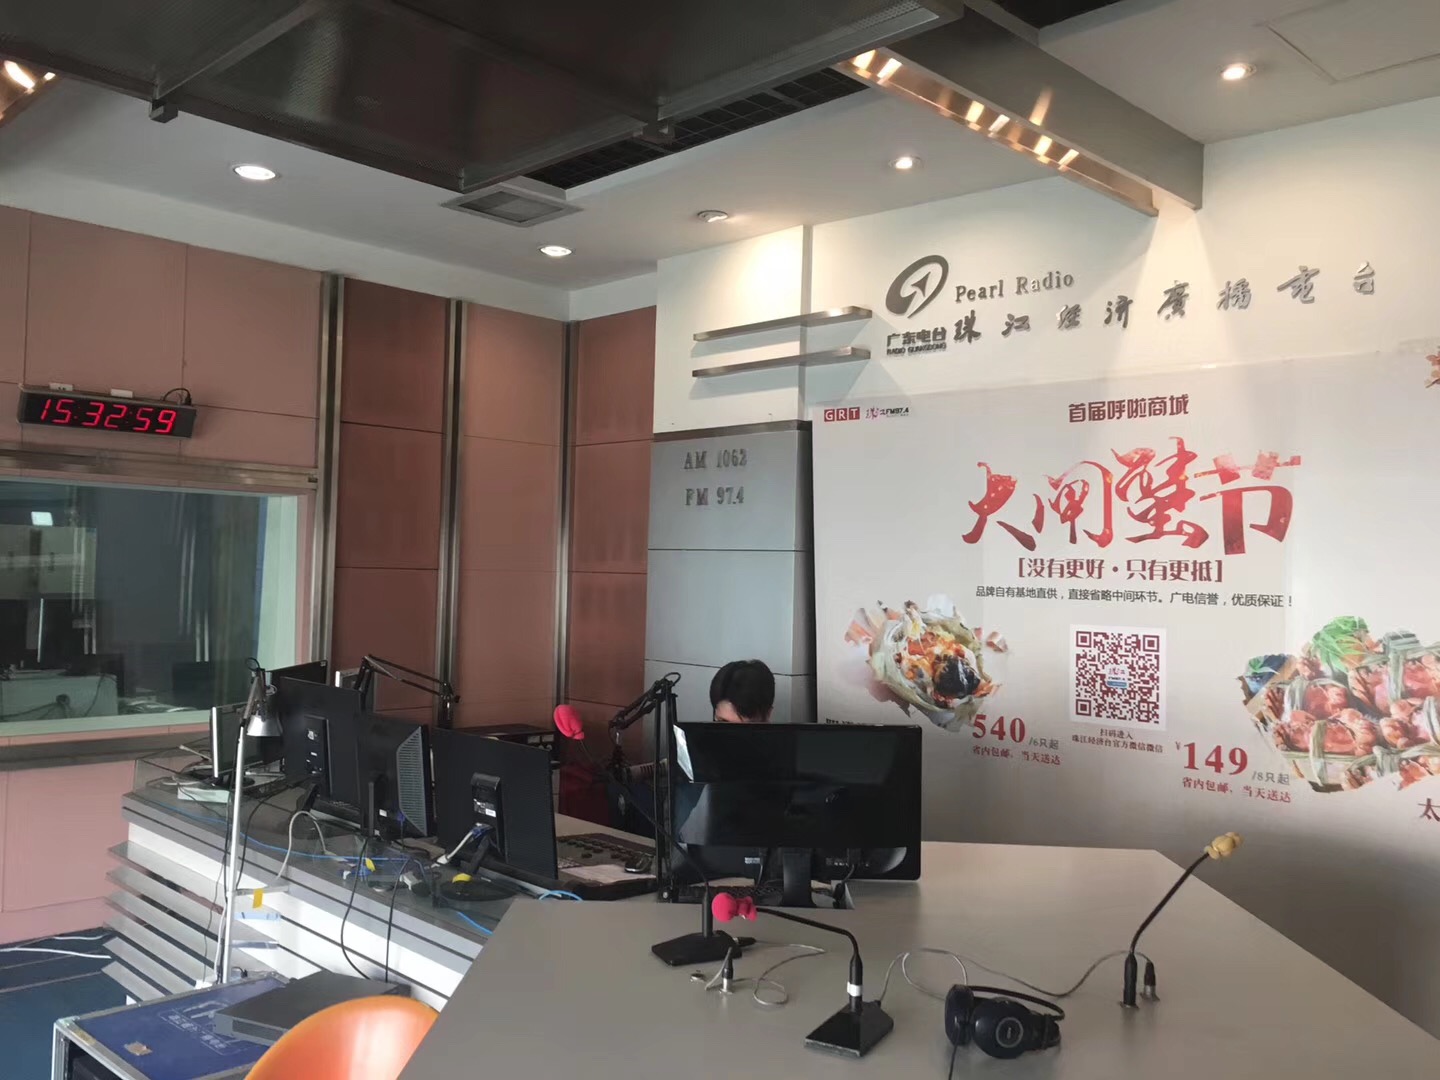 广东人民广播电台直播室声学装修及电视演播室影视灯光工程